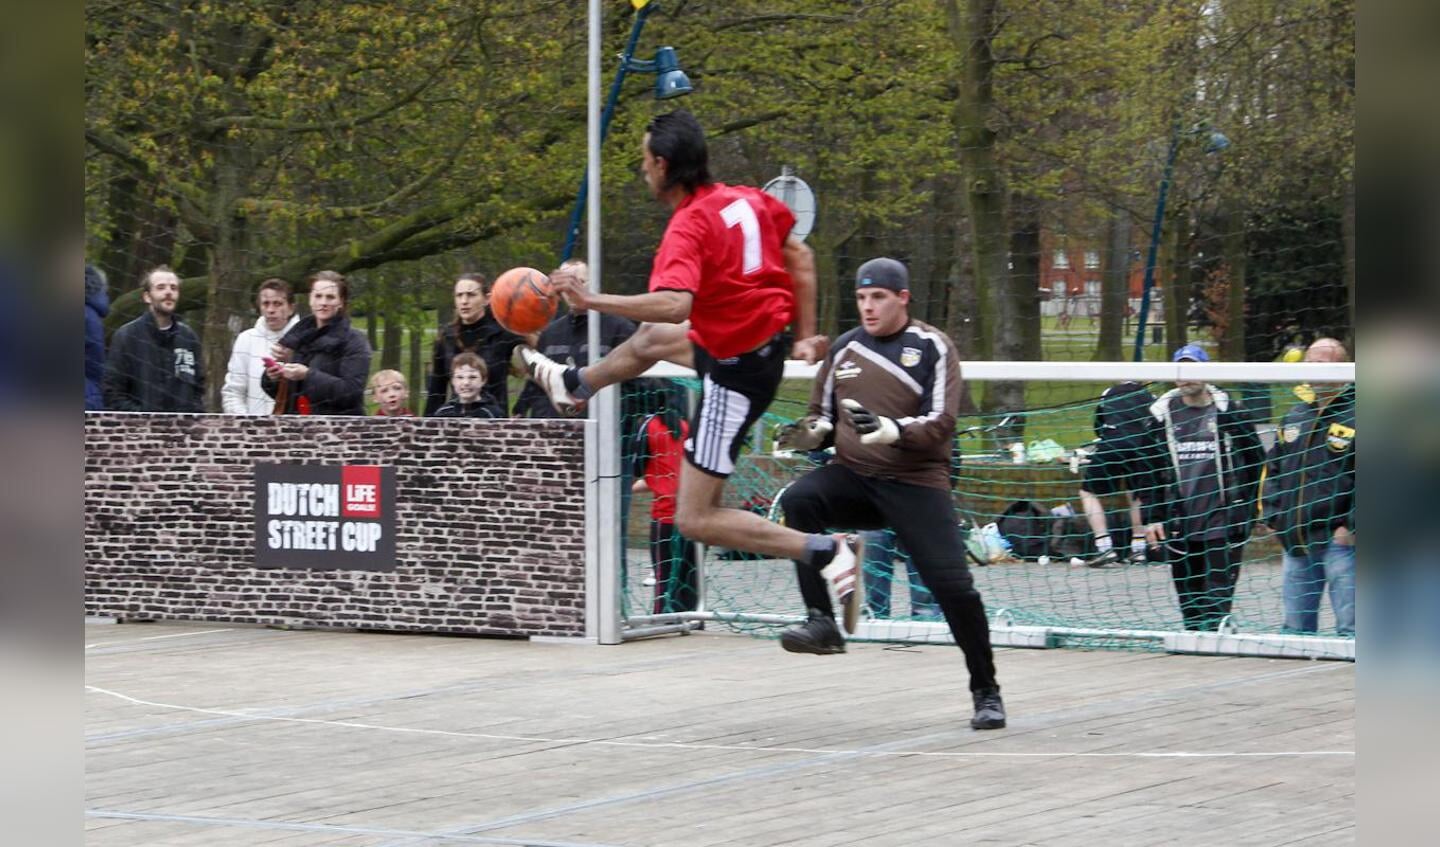 Voetballers in actie tijdens de Dutch Street Cup in Breda. foto Walter van Arendonk